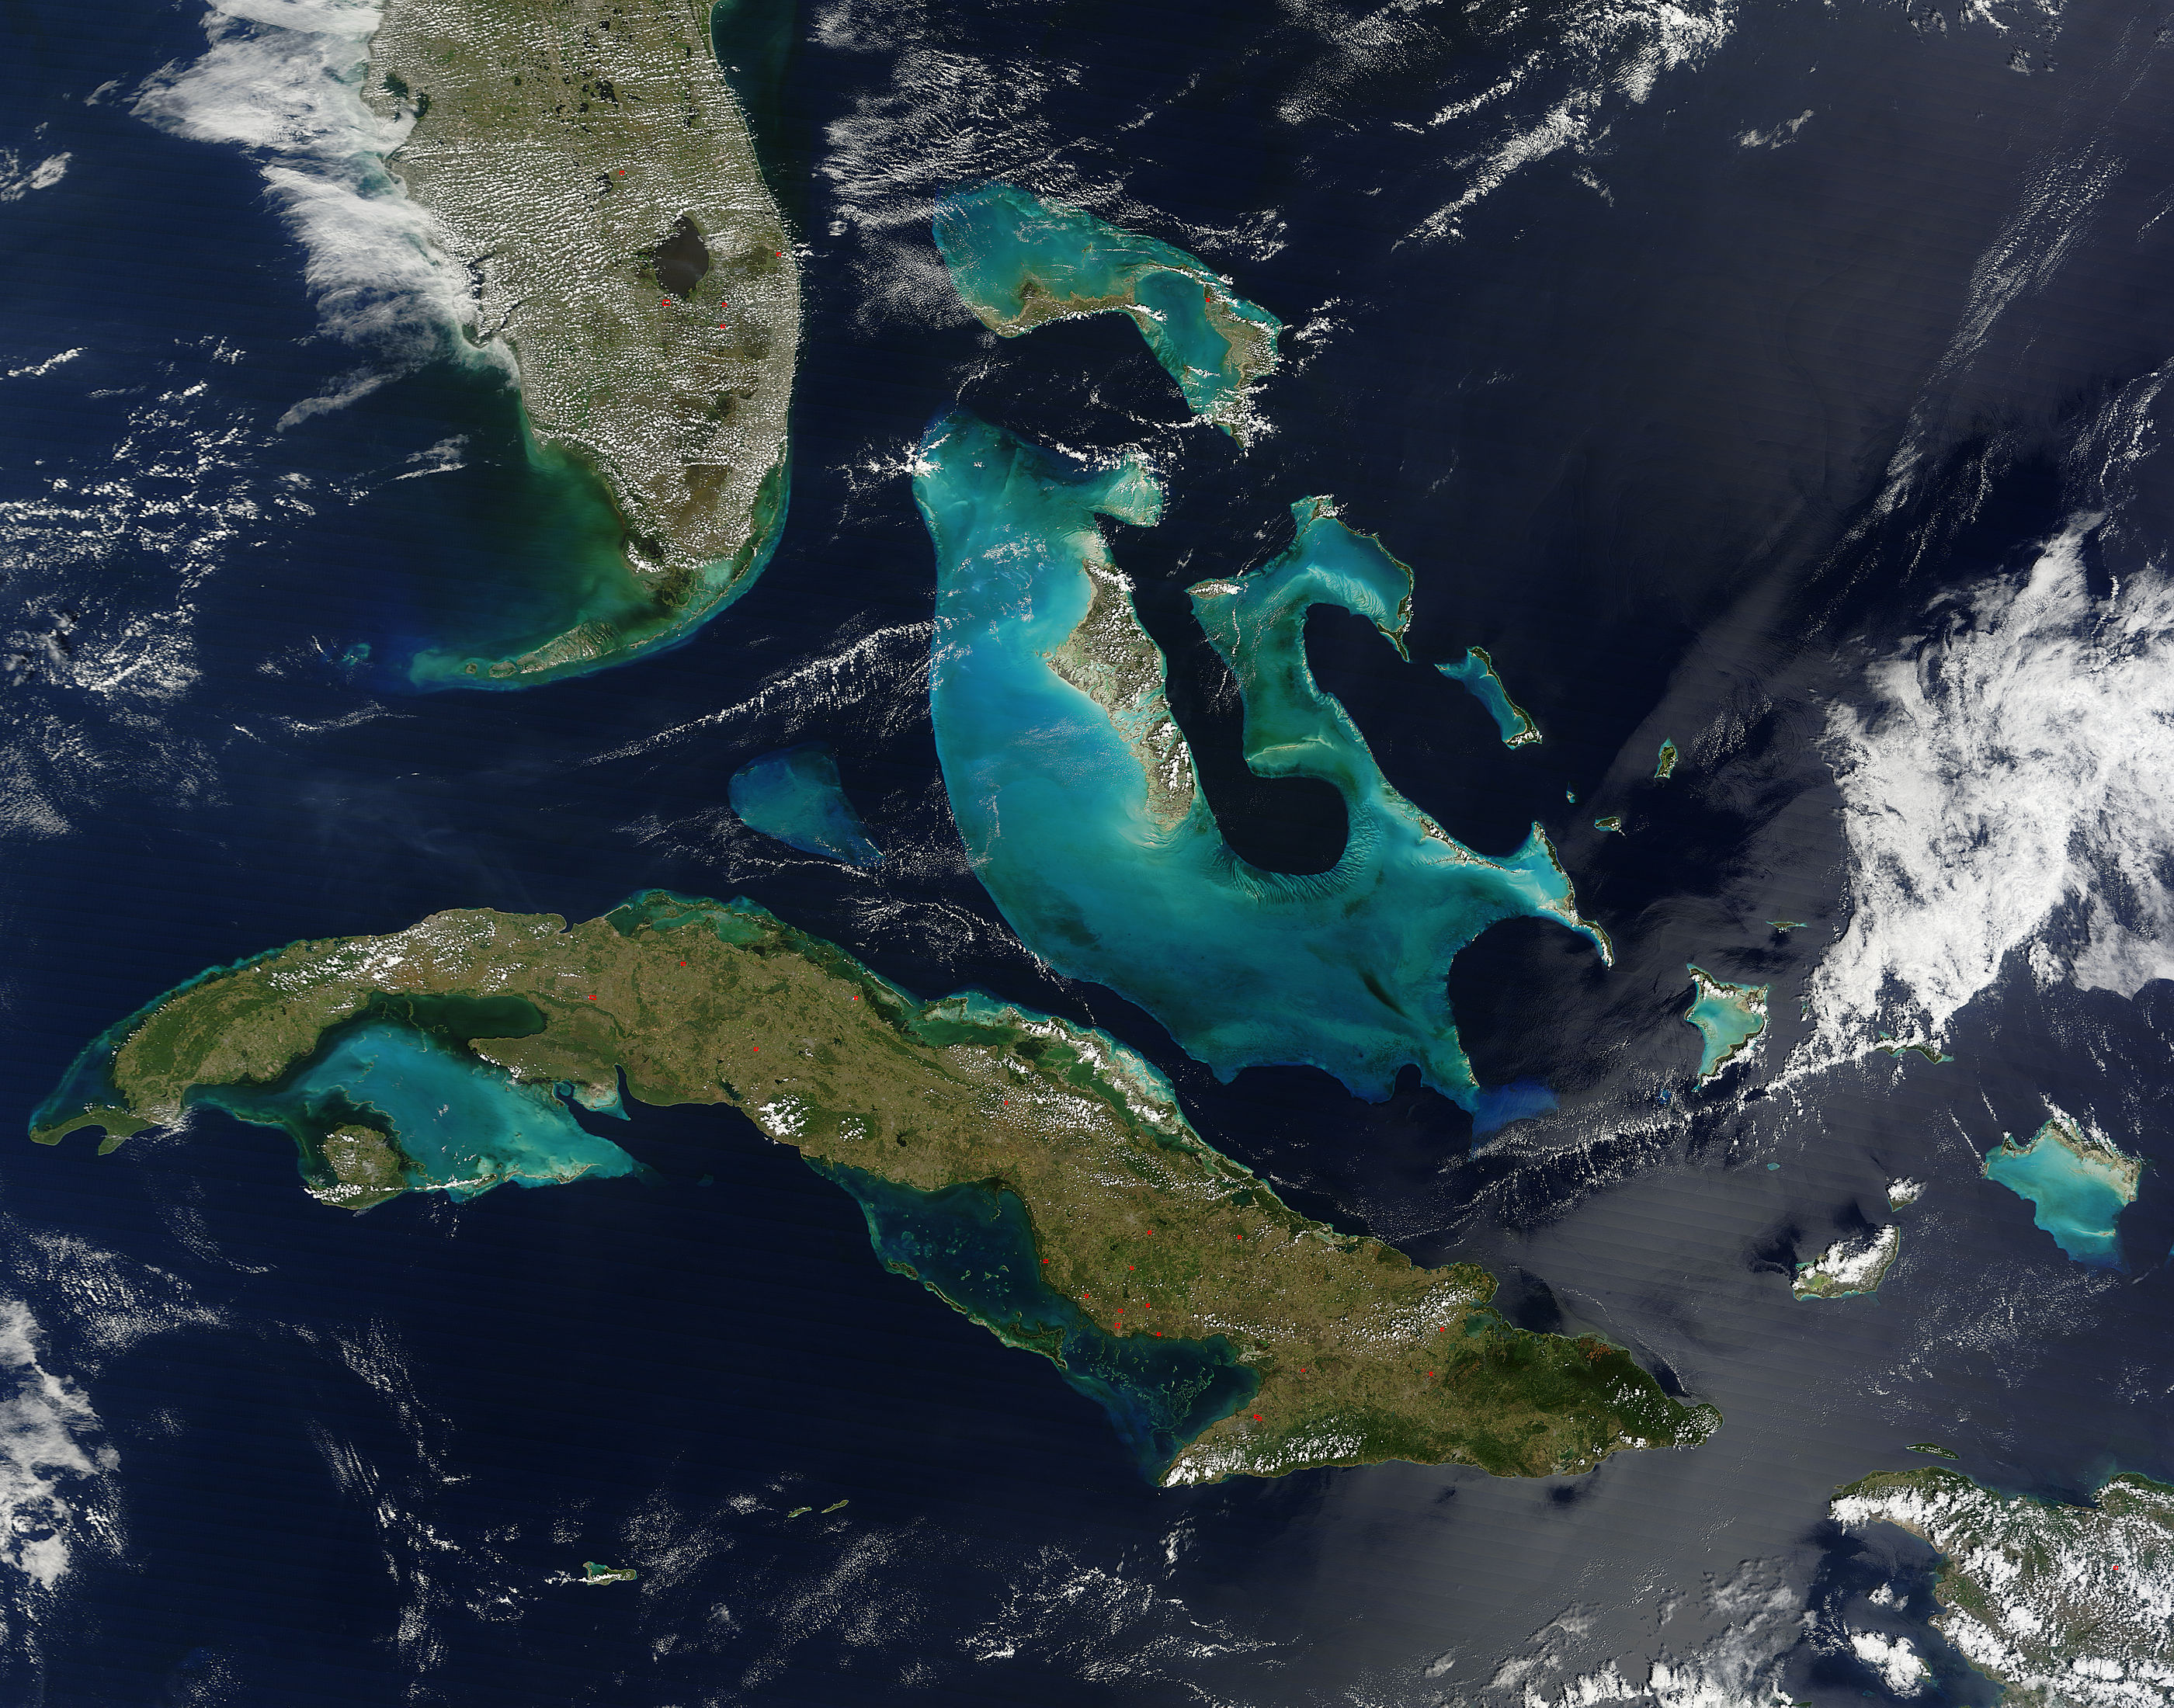 Cette image des Bahamas a été obtenue grâce à l'instrument Modis à bord du satellite Terra permettant d'étudier l'évolution de la couverture végétale de la Terre. © Nasa